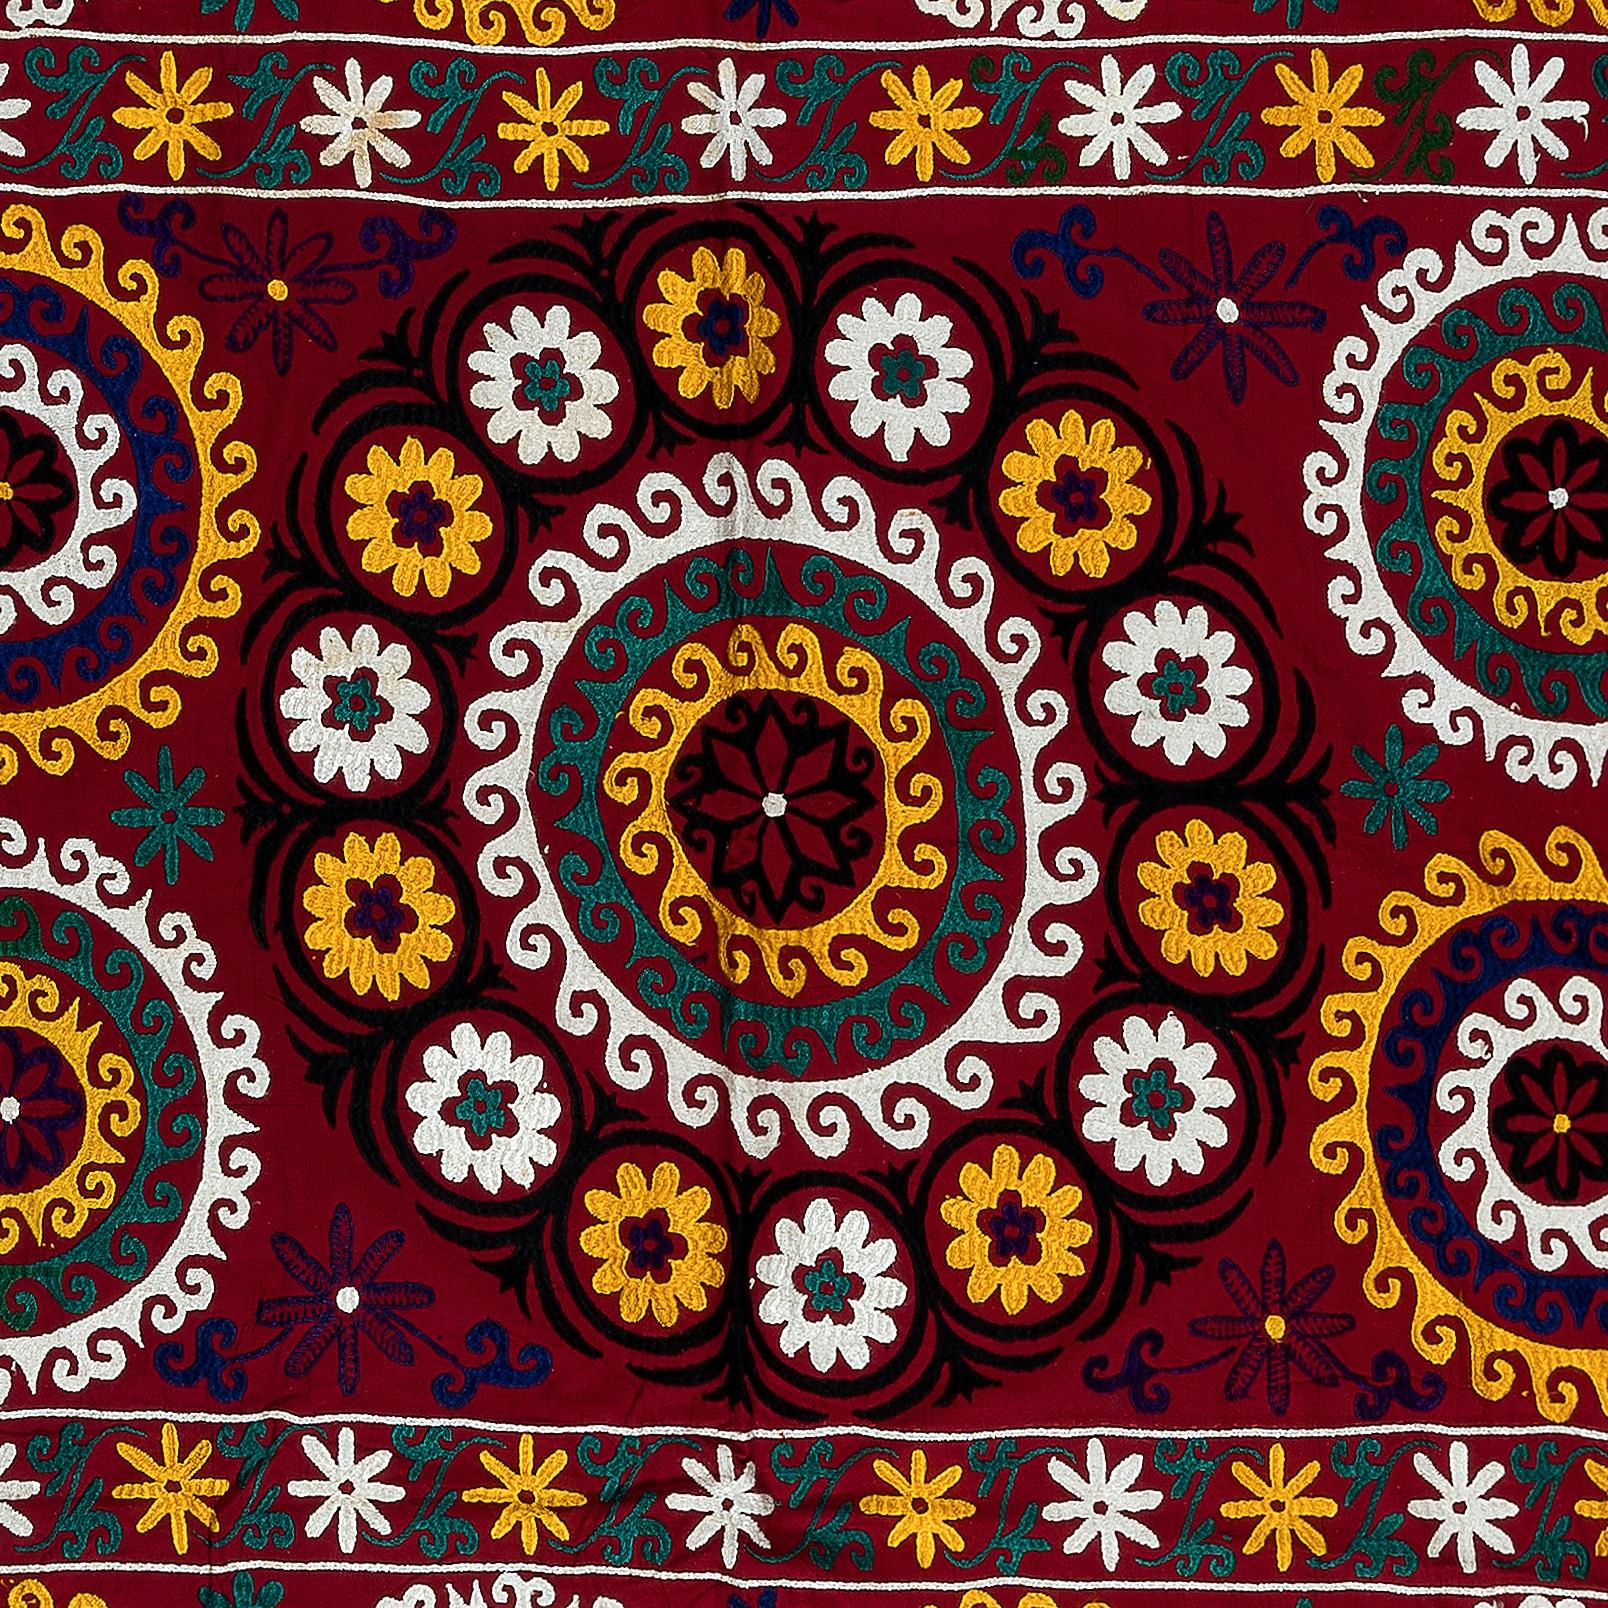 Suzani, ein zentralasiatischer Begriff für eine bestimmte Art von Handarbeit, ist auch der allgemeinere Name für die äußerst beliebten dekorativen Textilstücke, die diese Handarbeit in lebhaften Farben mit kühnen, ausdrucksstarken floralen und